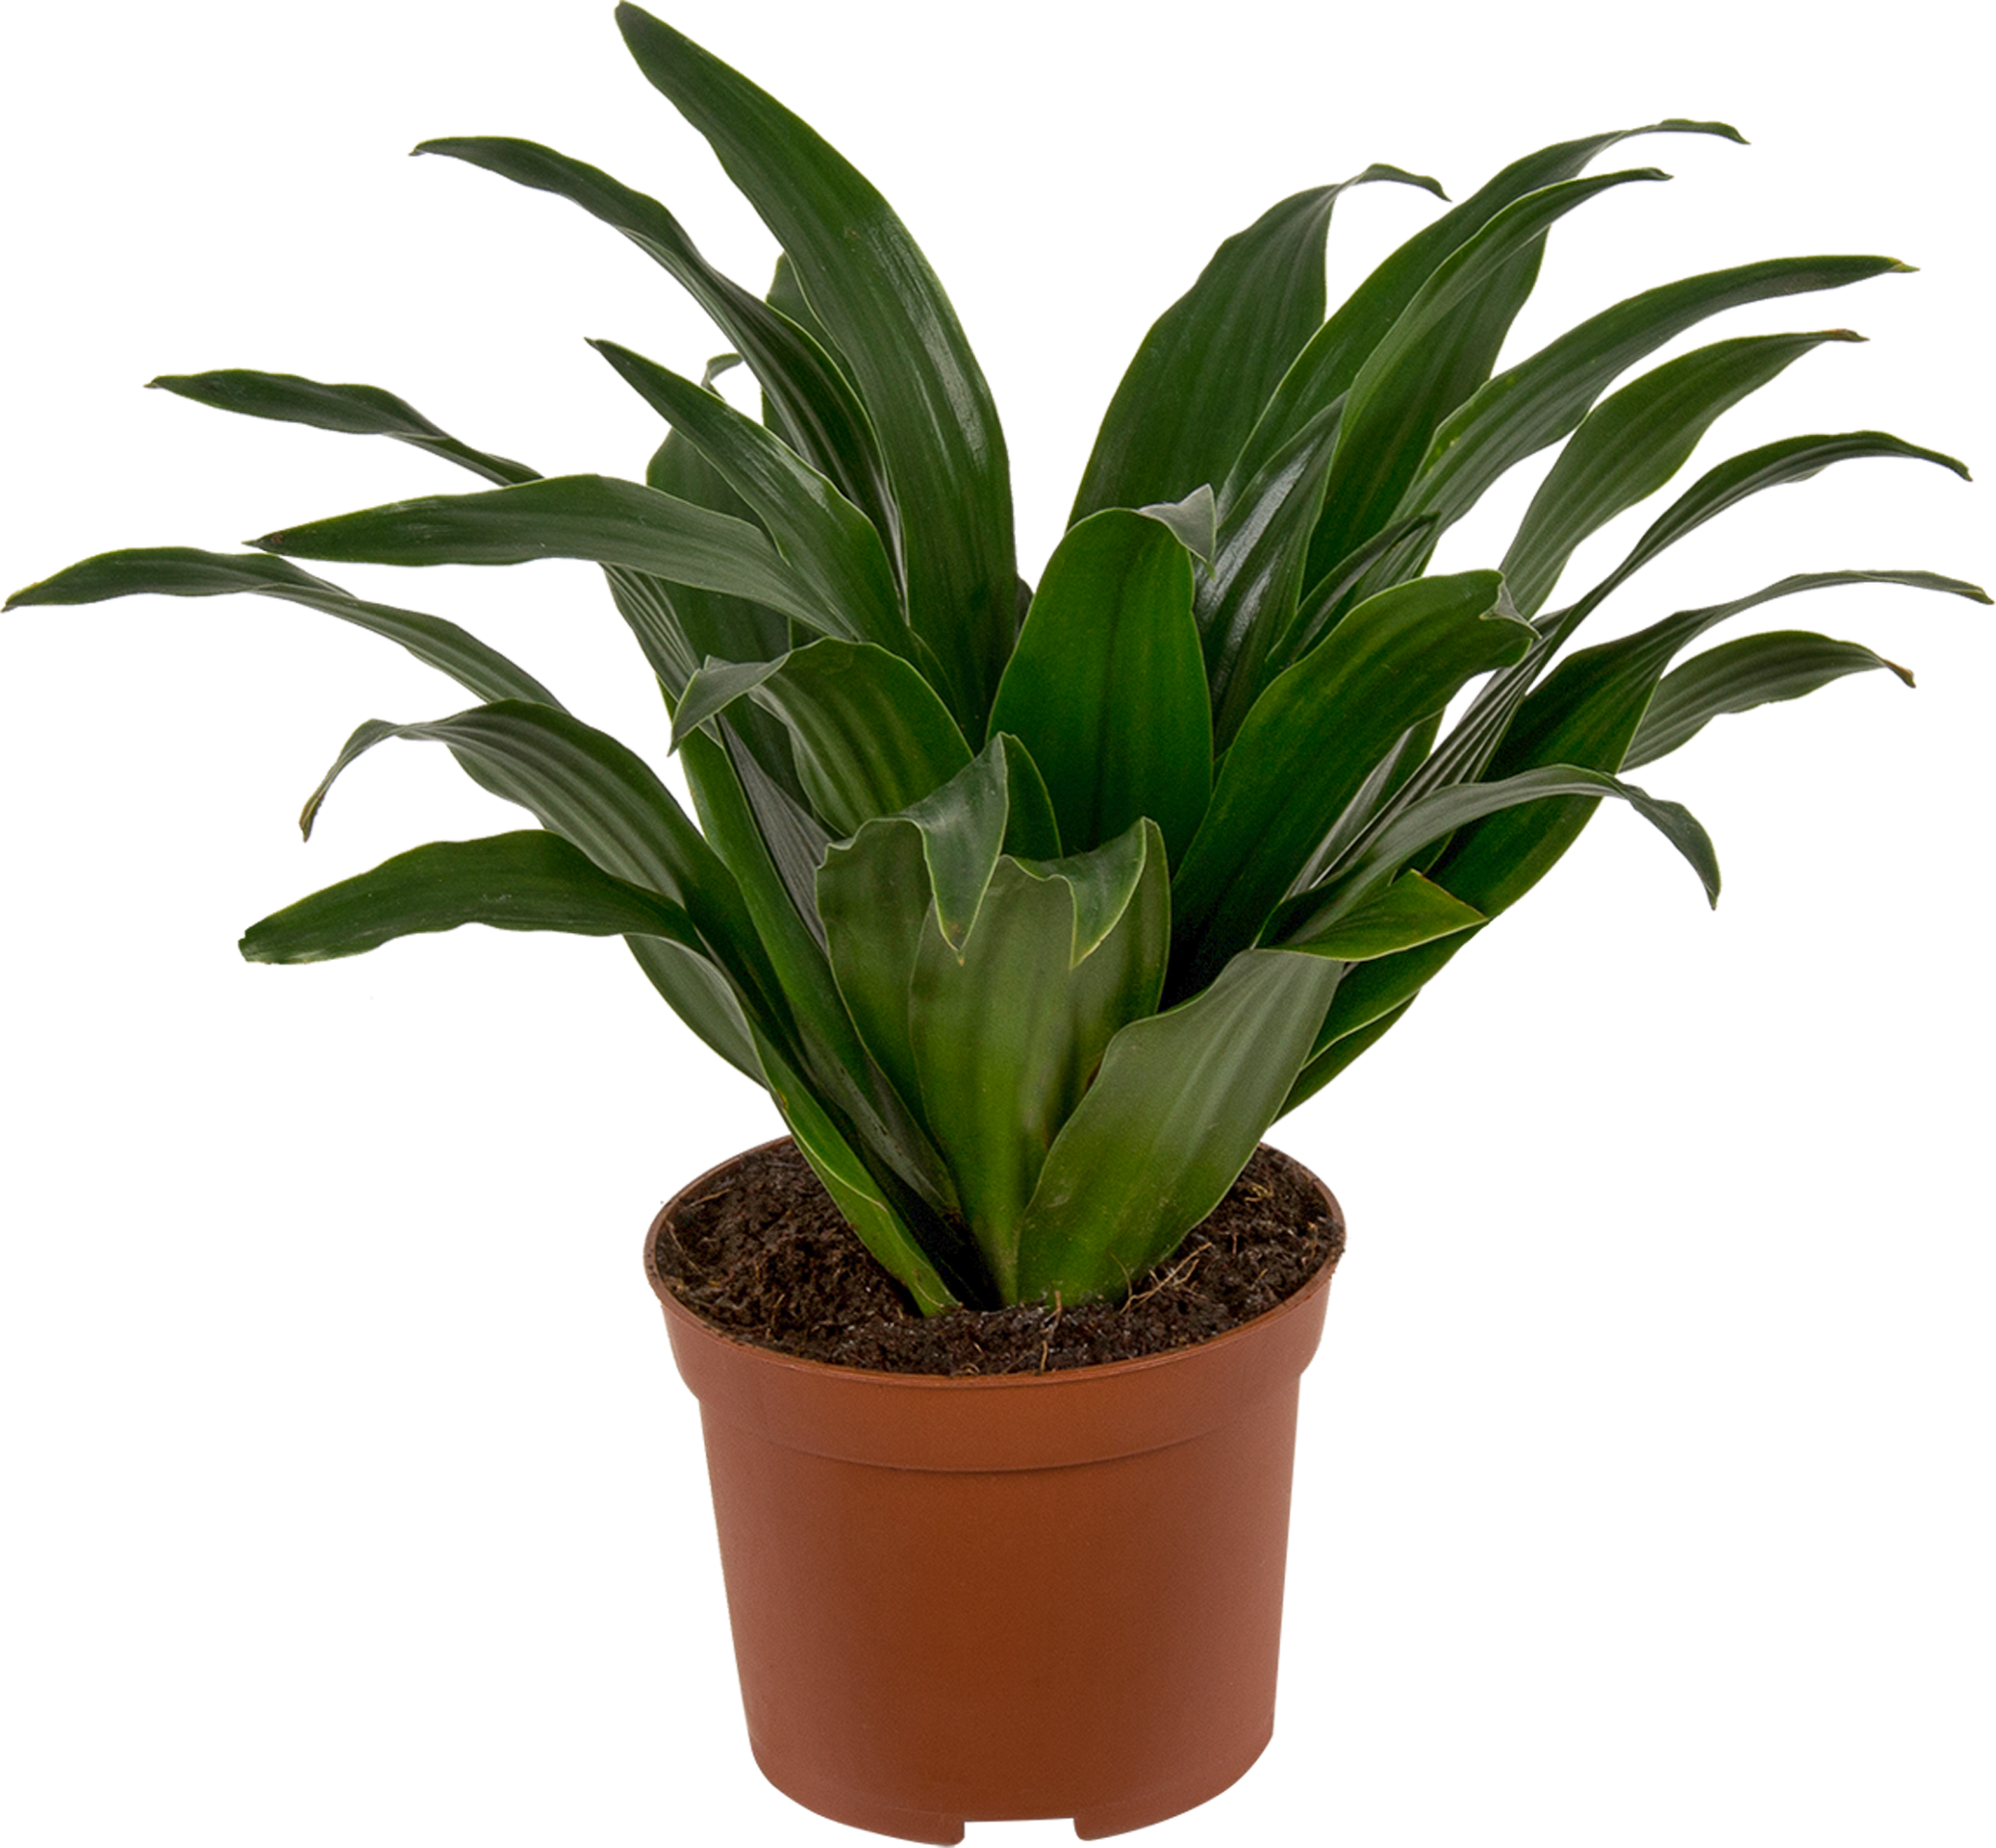 Аглаонема - комнатное растение, которое легко выращивать. Как правильно ухаживать за аглонемами?